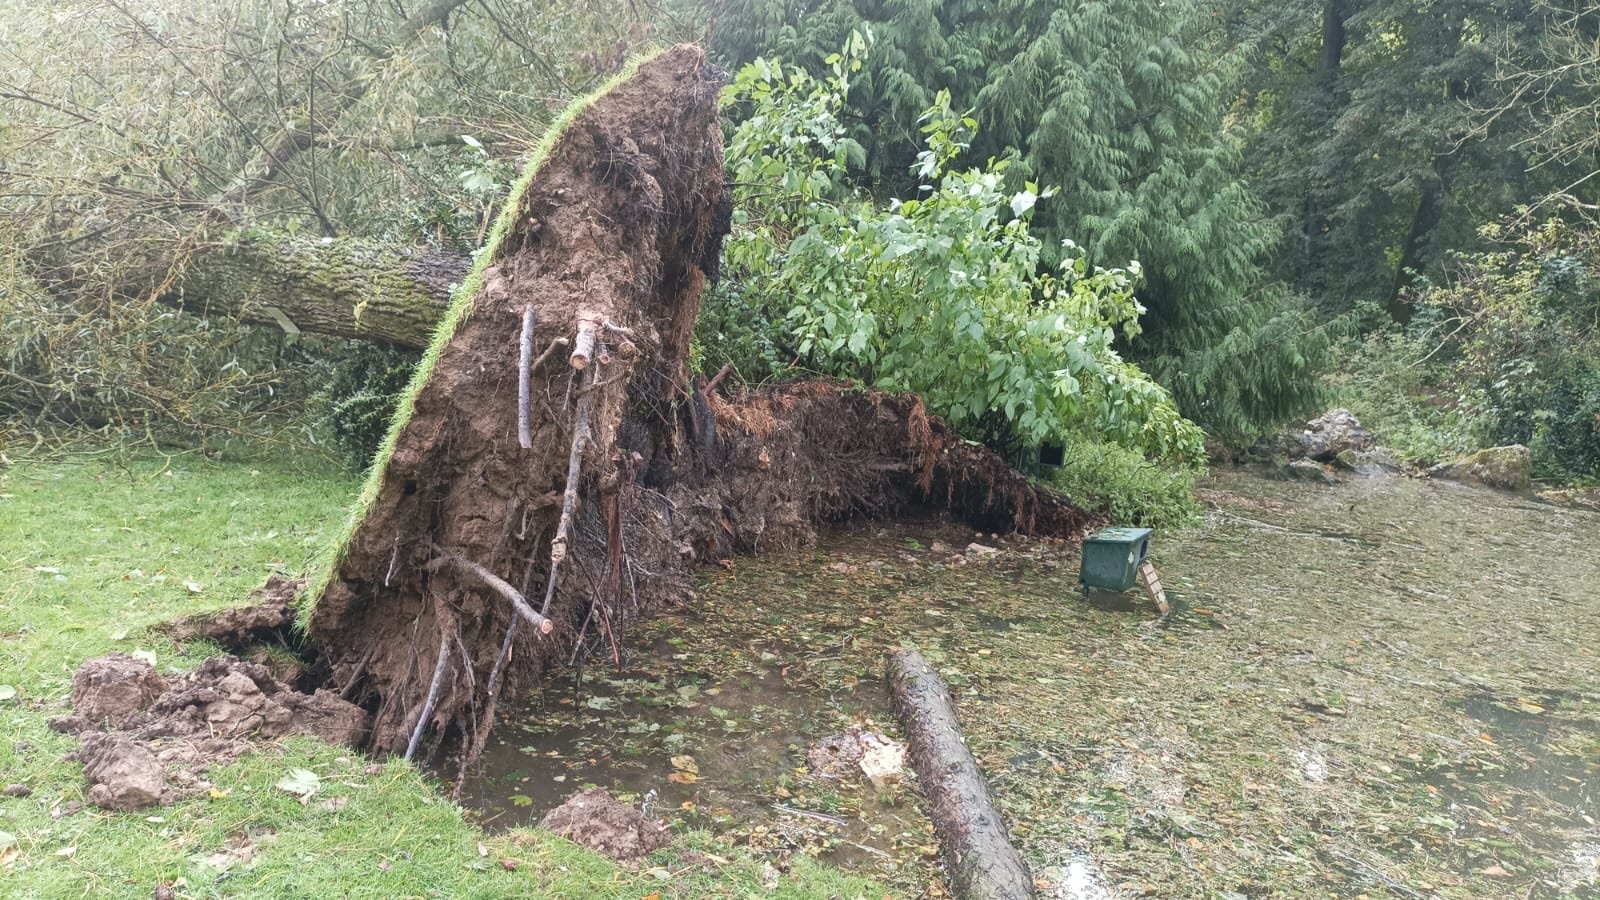 La mini-tornade de dimanche a causé de nombreux dégâts, notamment du côté du riche patrimoine arboré du parc zoologique de Clères. DR